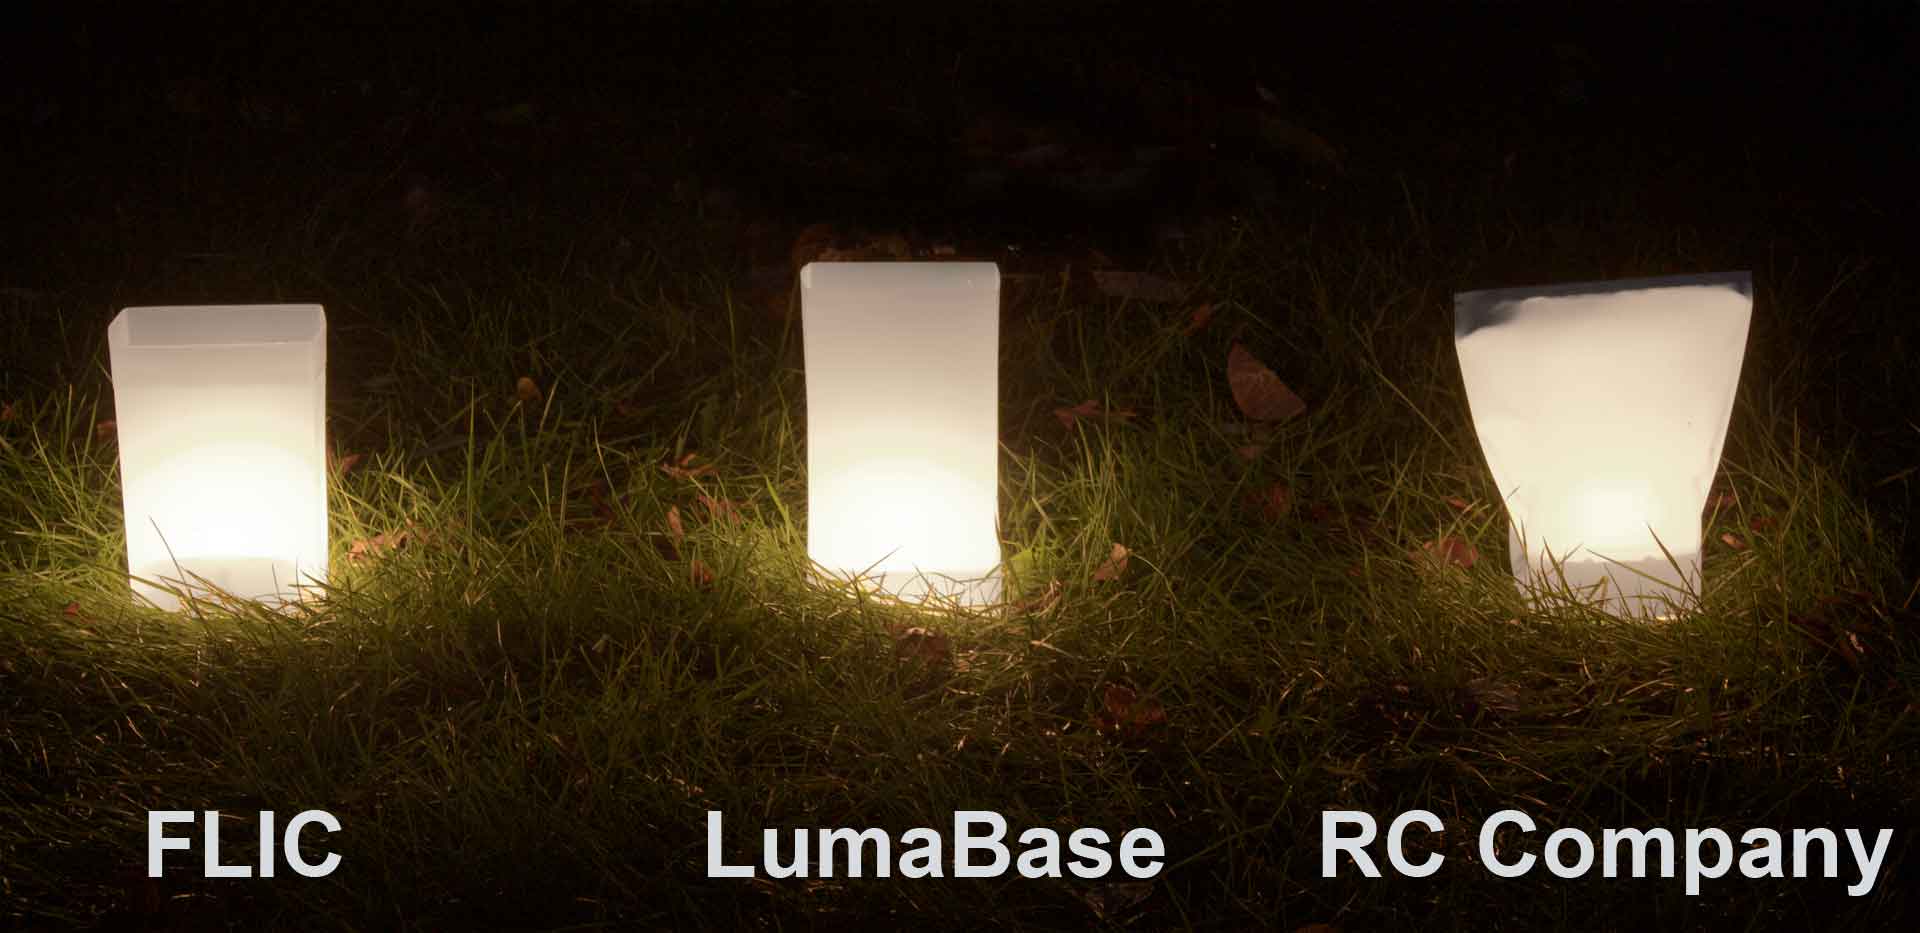 Compare luminaries at night